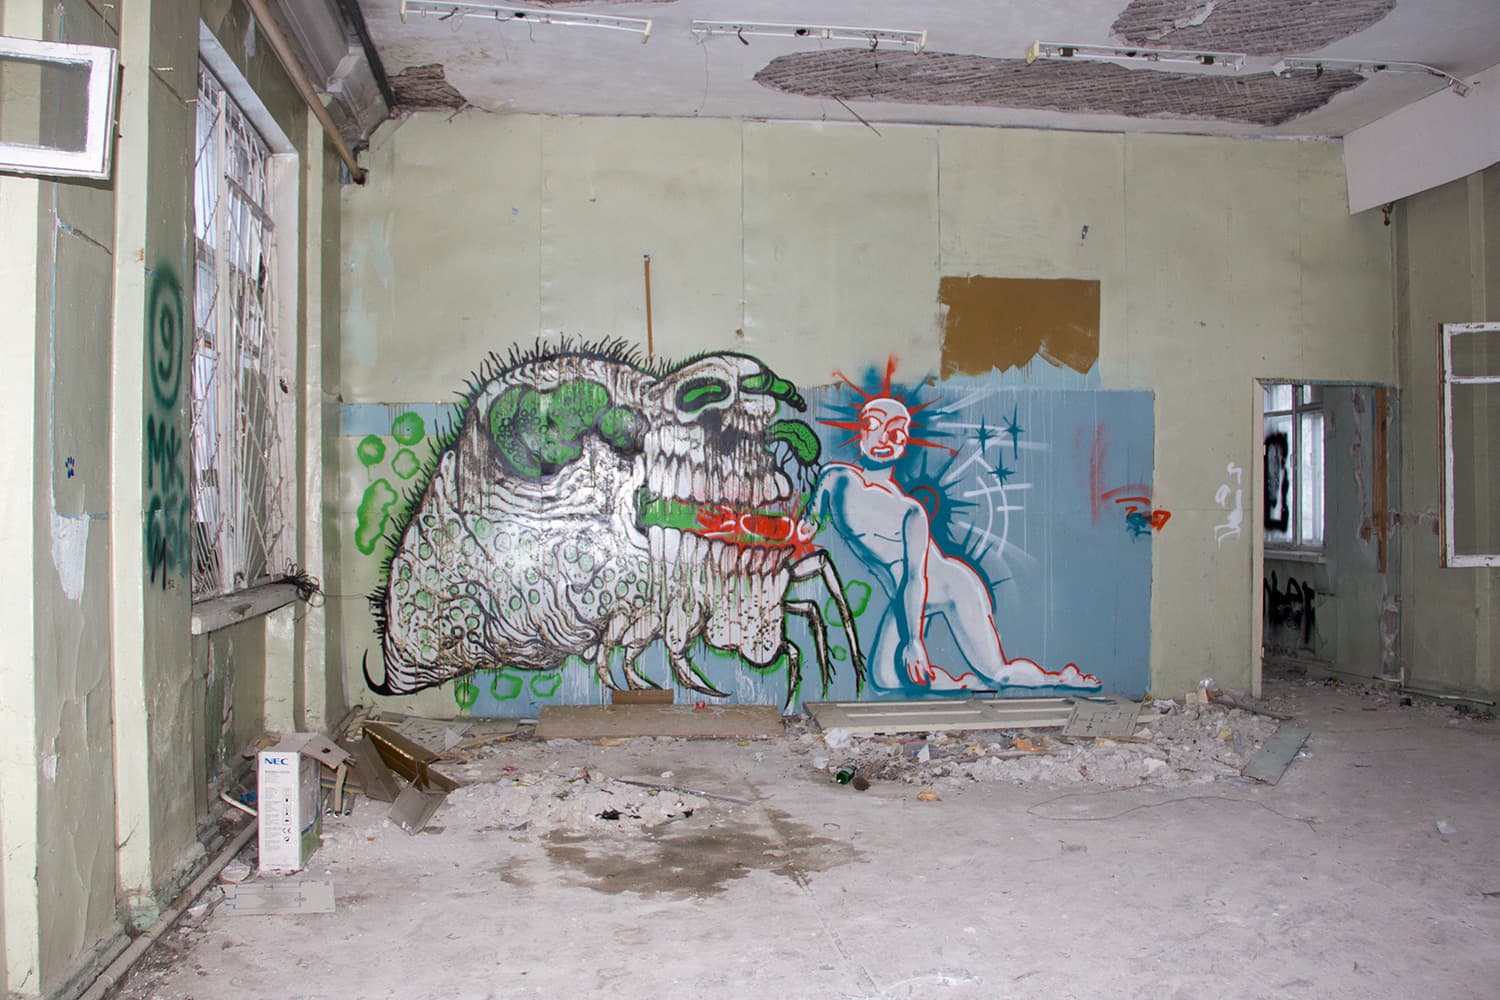 Как часто бывает в заброшенных зданиях, в укромных местах прячутся мрачноватые граффити